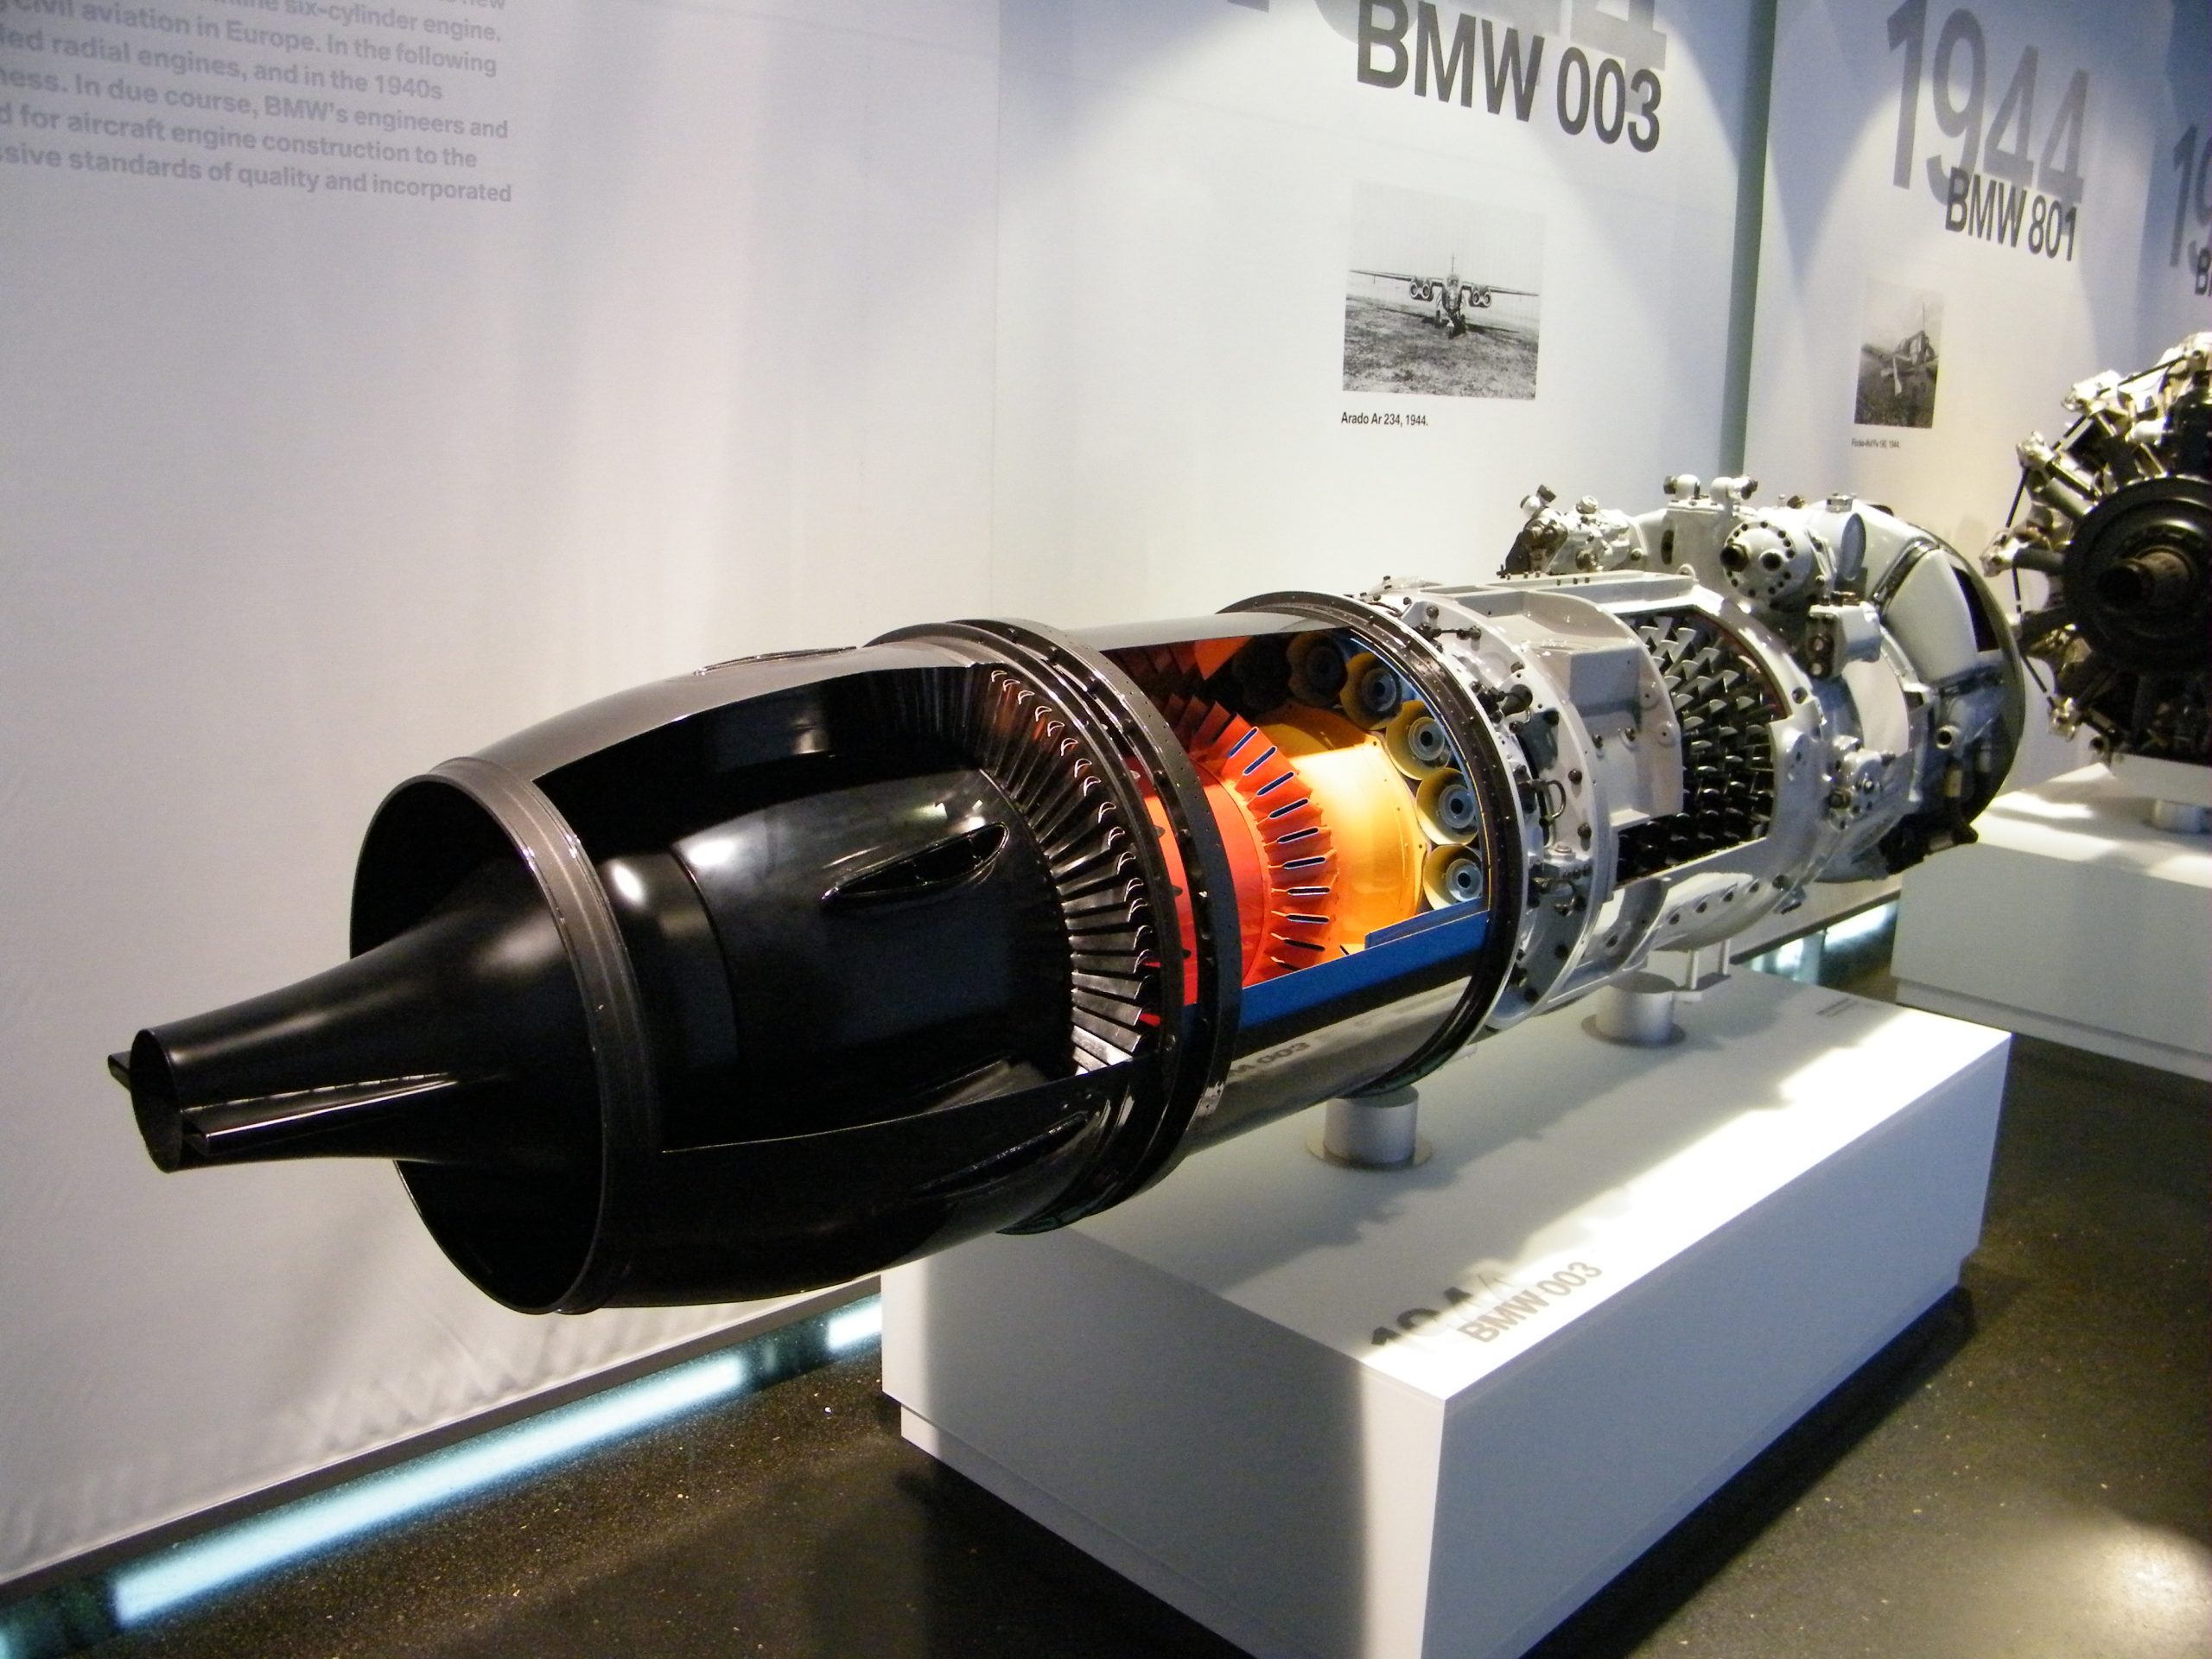 BMW 109-003 - первый серийный реактивный двигатель